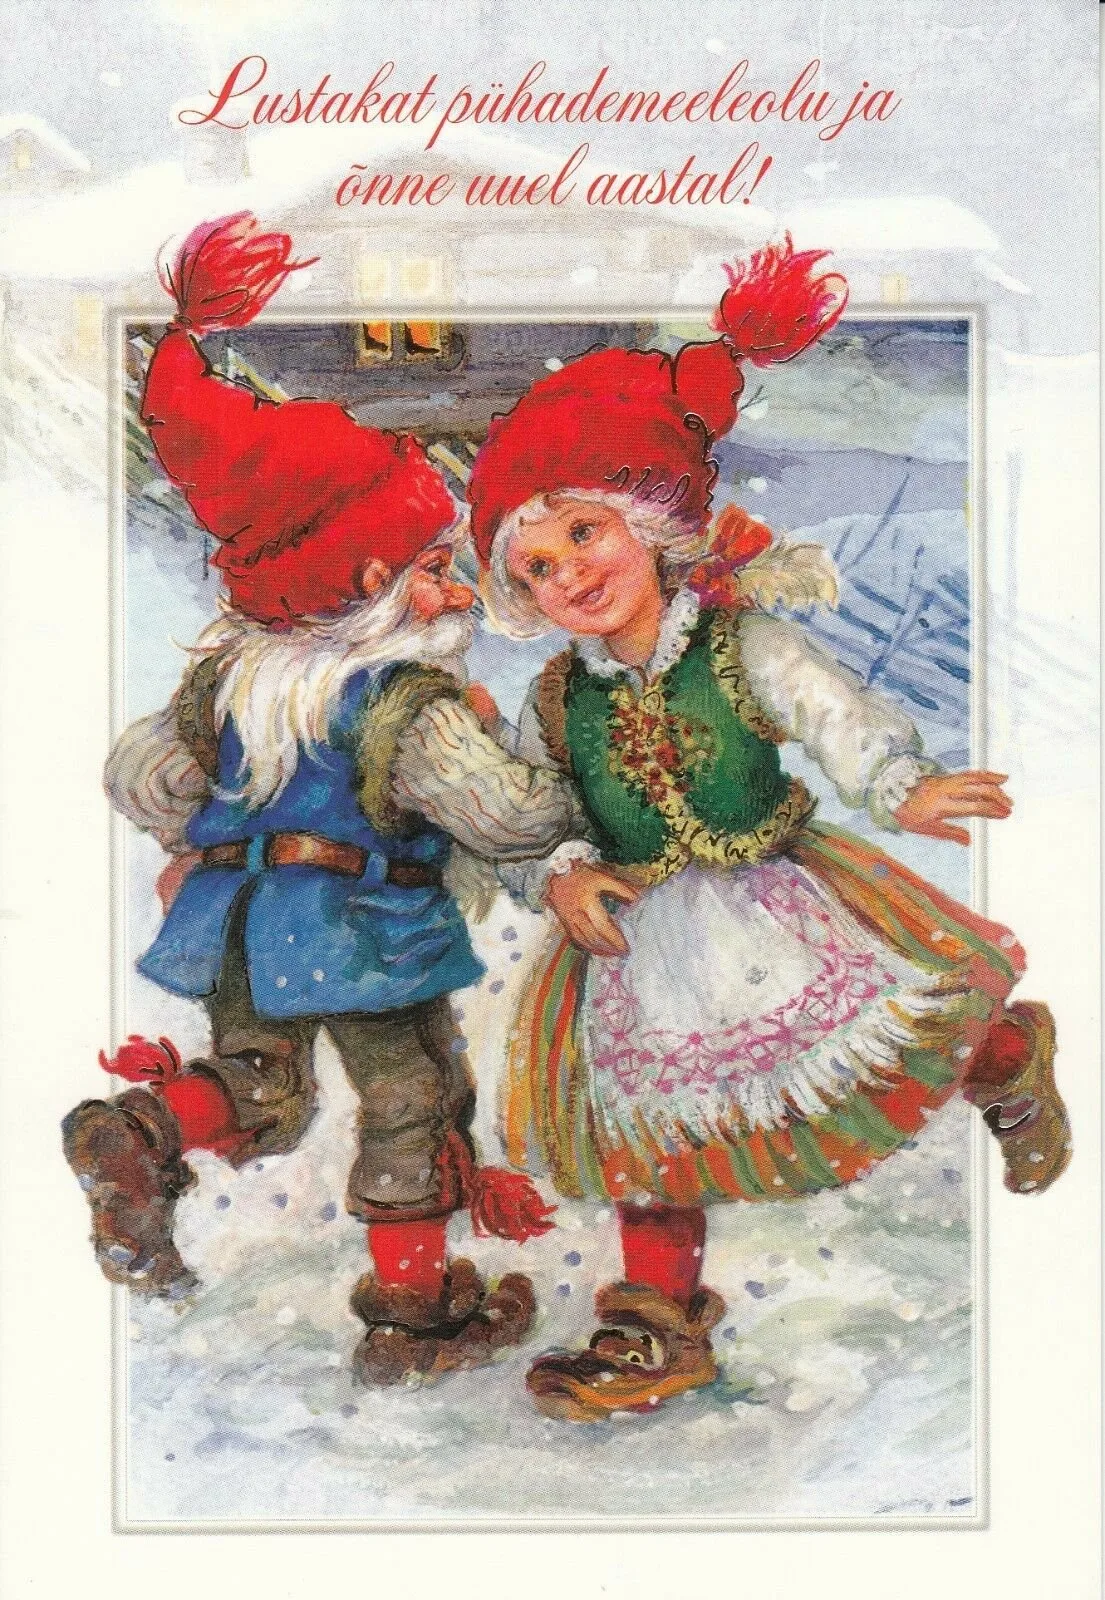 Фото Поздравление с Рождеством на польском языке с переводом на русский #71